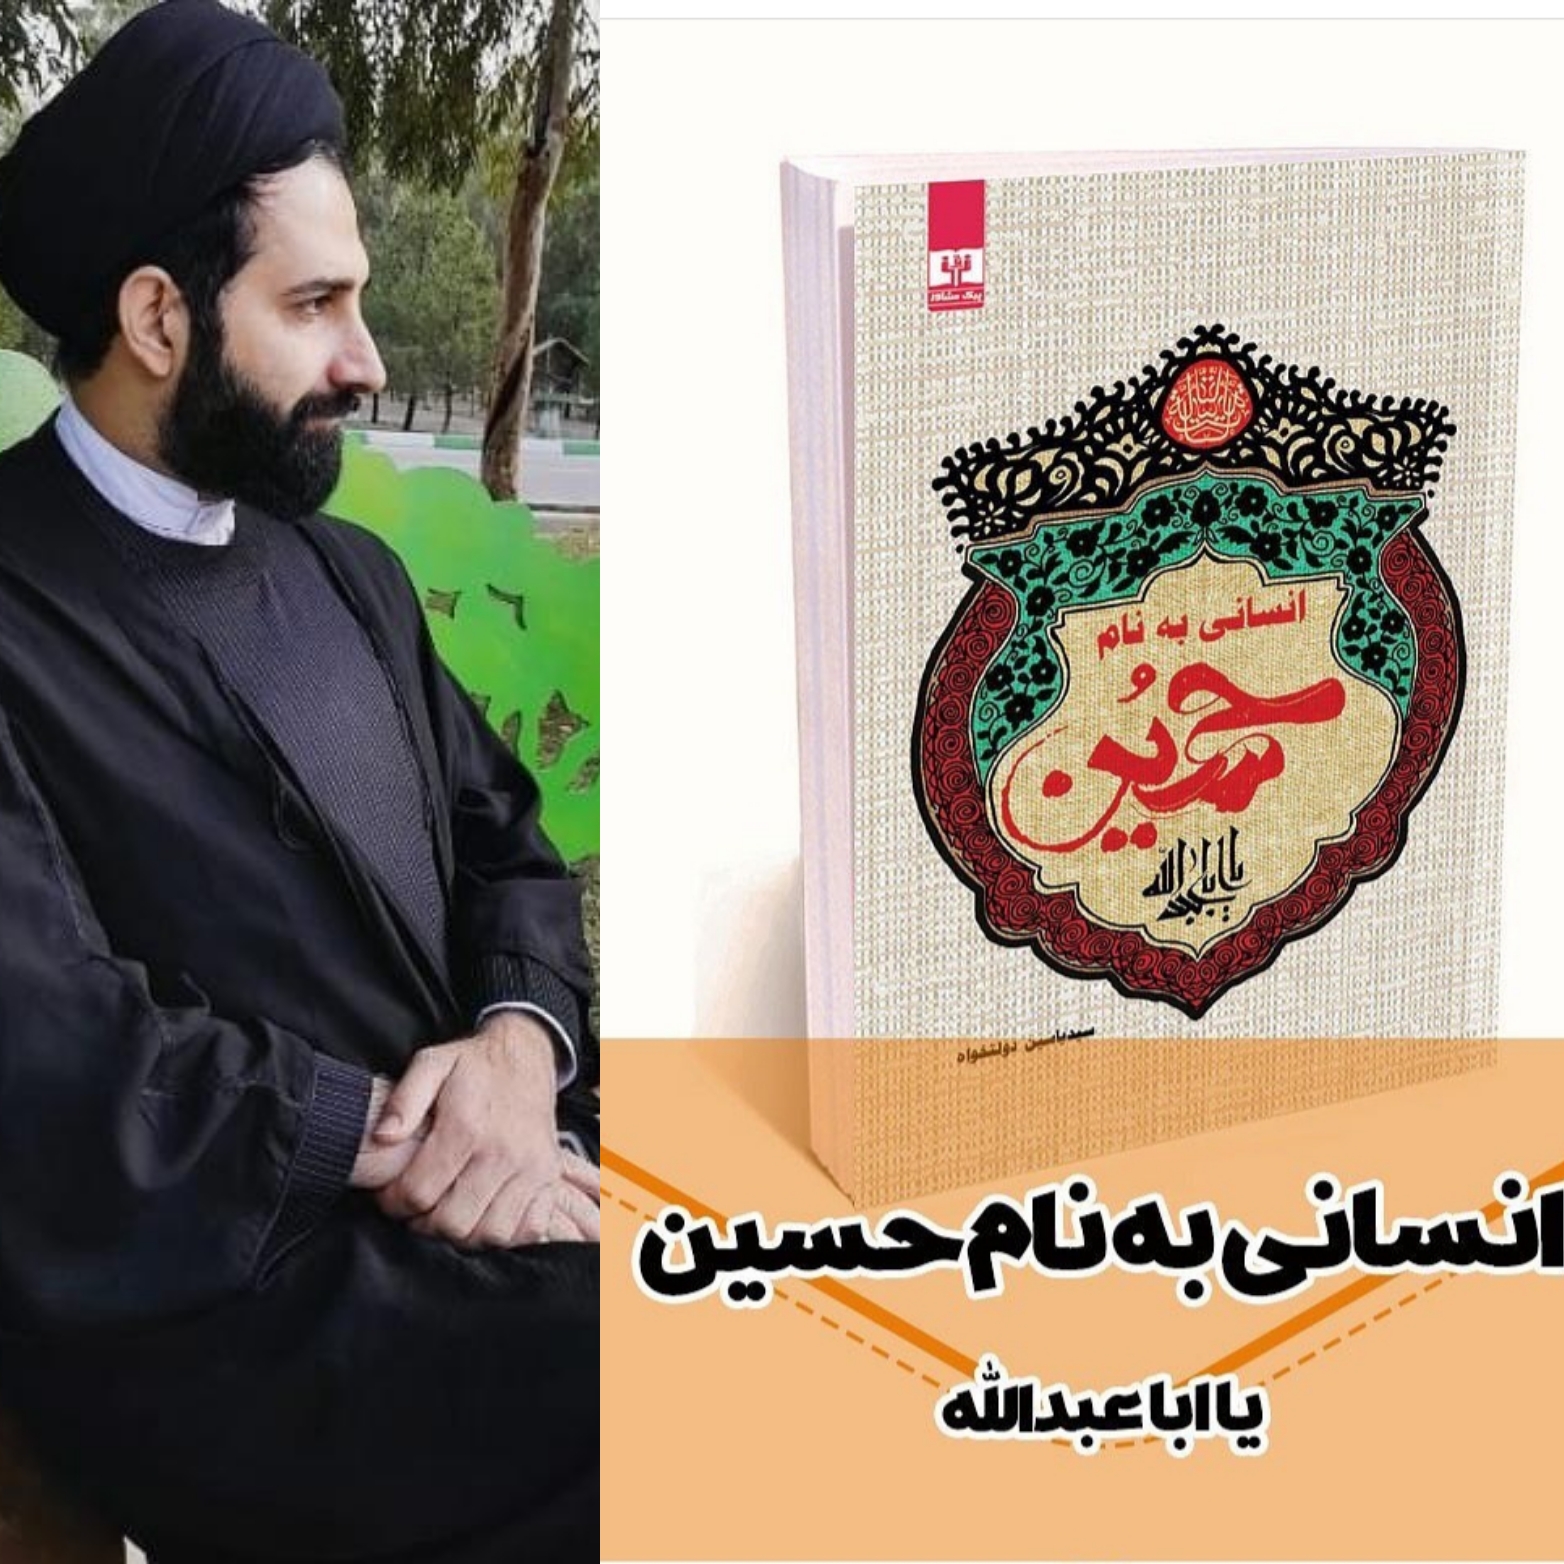 کتاب انسانی به نام حسین (ع) به نویسندگی حاج آقا سید یاسین دولتخواه منتشر گردید